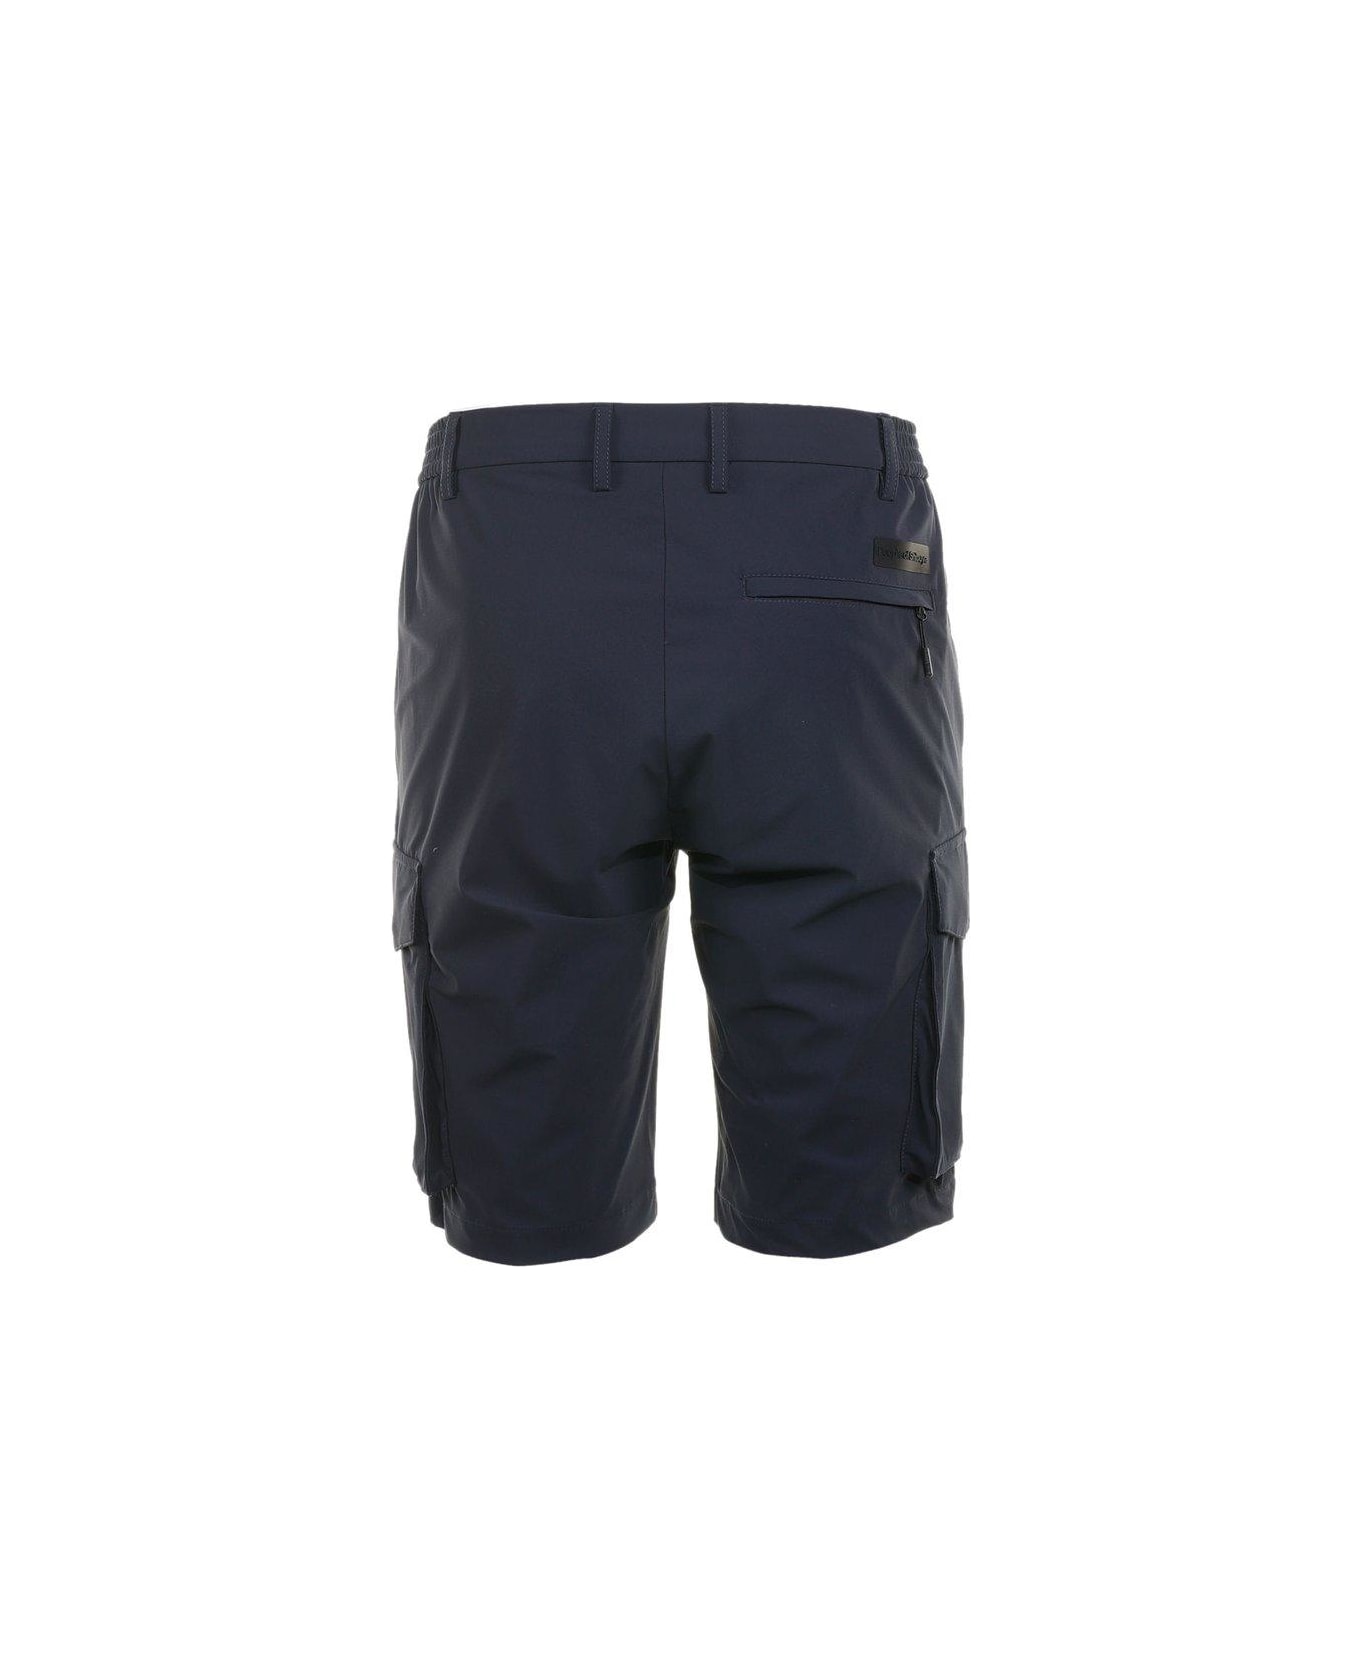 People Of Shibuya Pleat Detailed Bermuda Shorts - Navy Blue